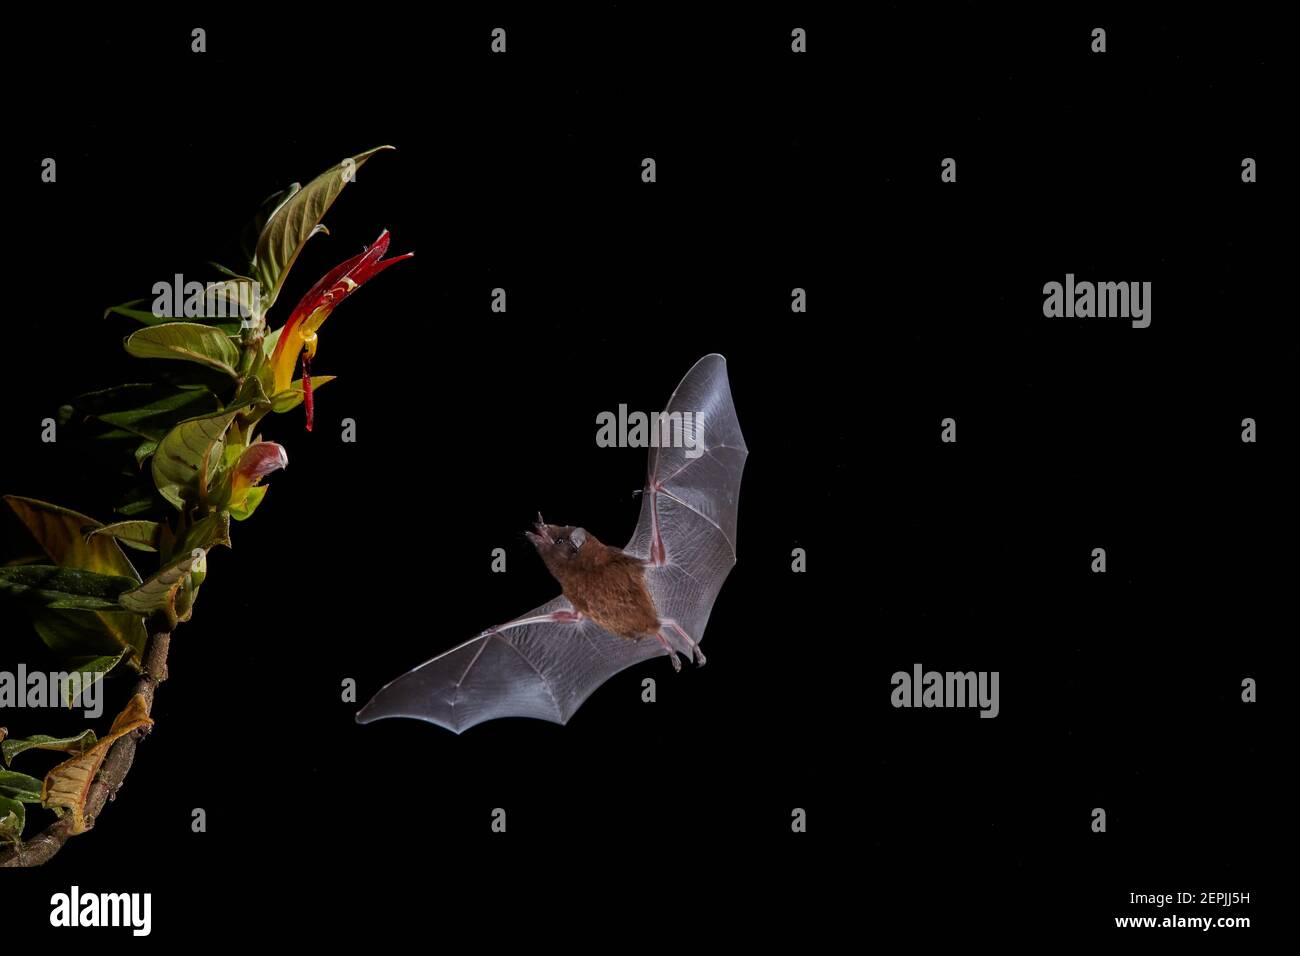 Orangennektar Fledermaus, Lonchophylla Robusta. Nachtaufnahme einer Fledermaus im Flug, die Nektar von Nachtblumen saugt. Costa Rica Regenwald. Stockfoto